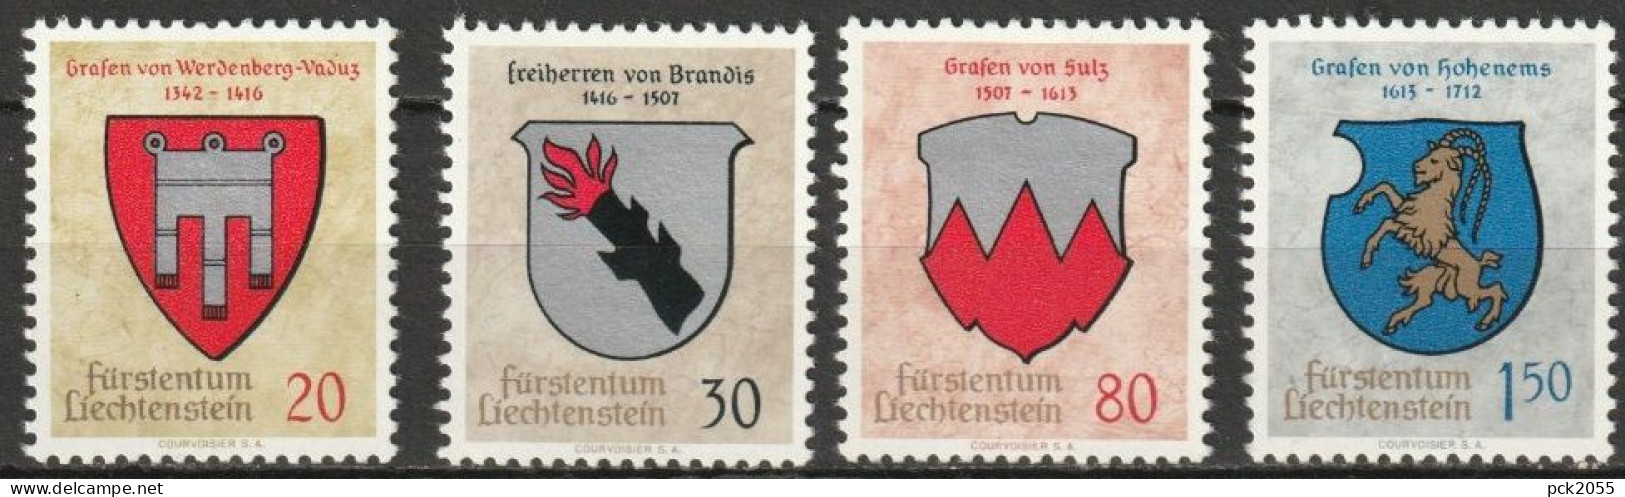 Lichtenstein 1964 MiNr.440 - 443 ** Postfrisch Wappen ( B 2806 ) Günstige Versandkosten - Ungebraucht